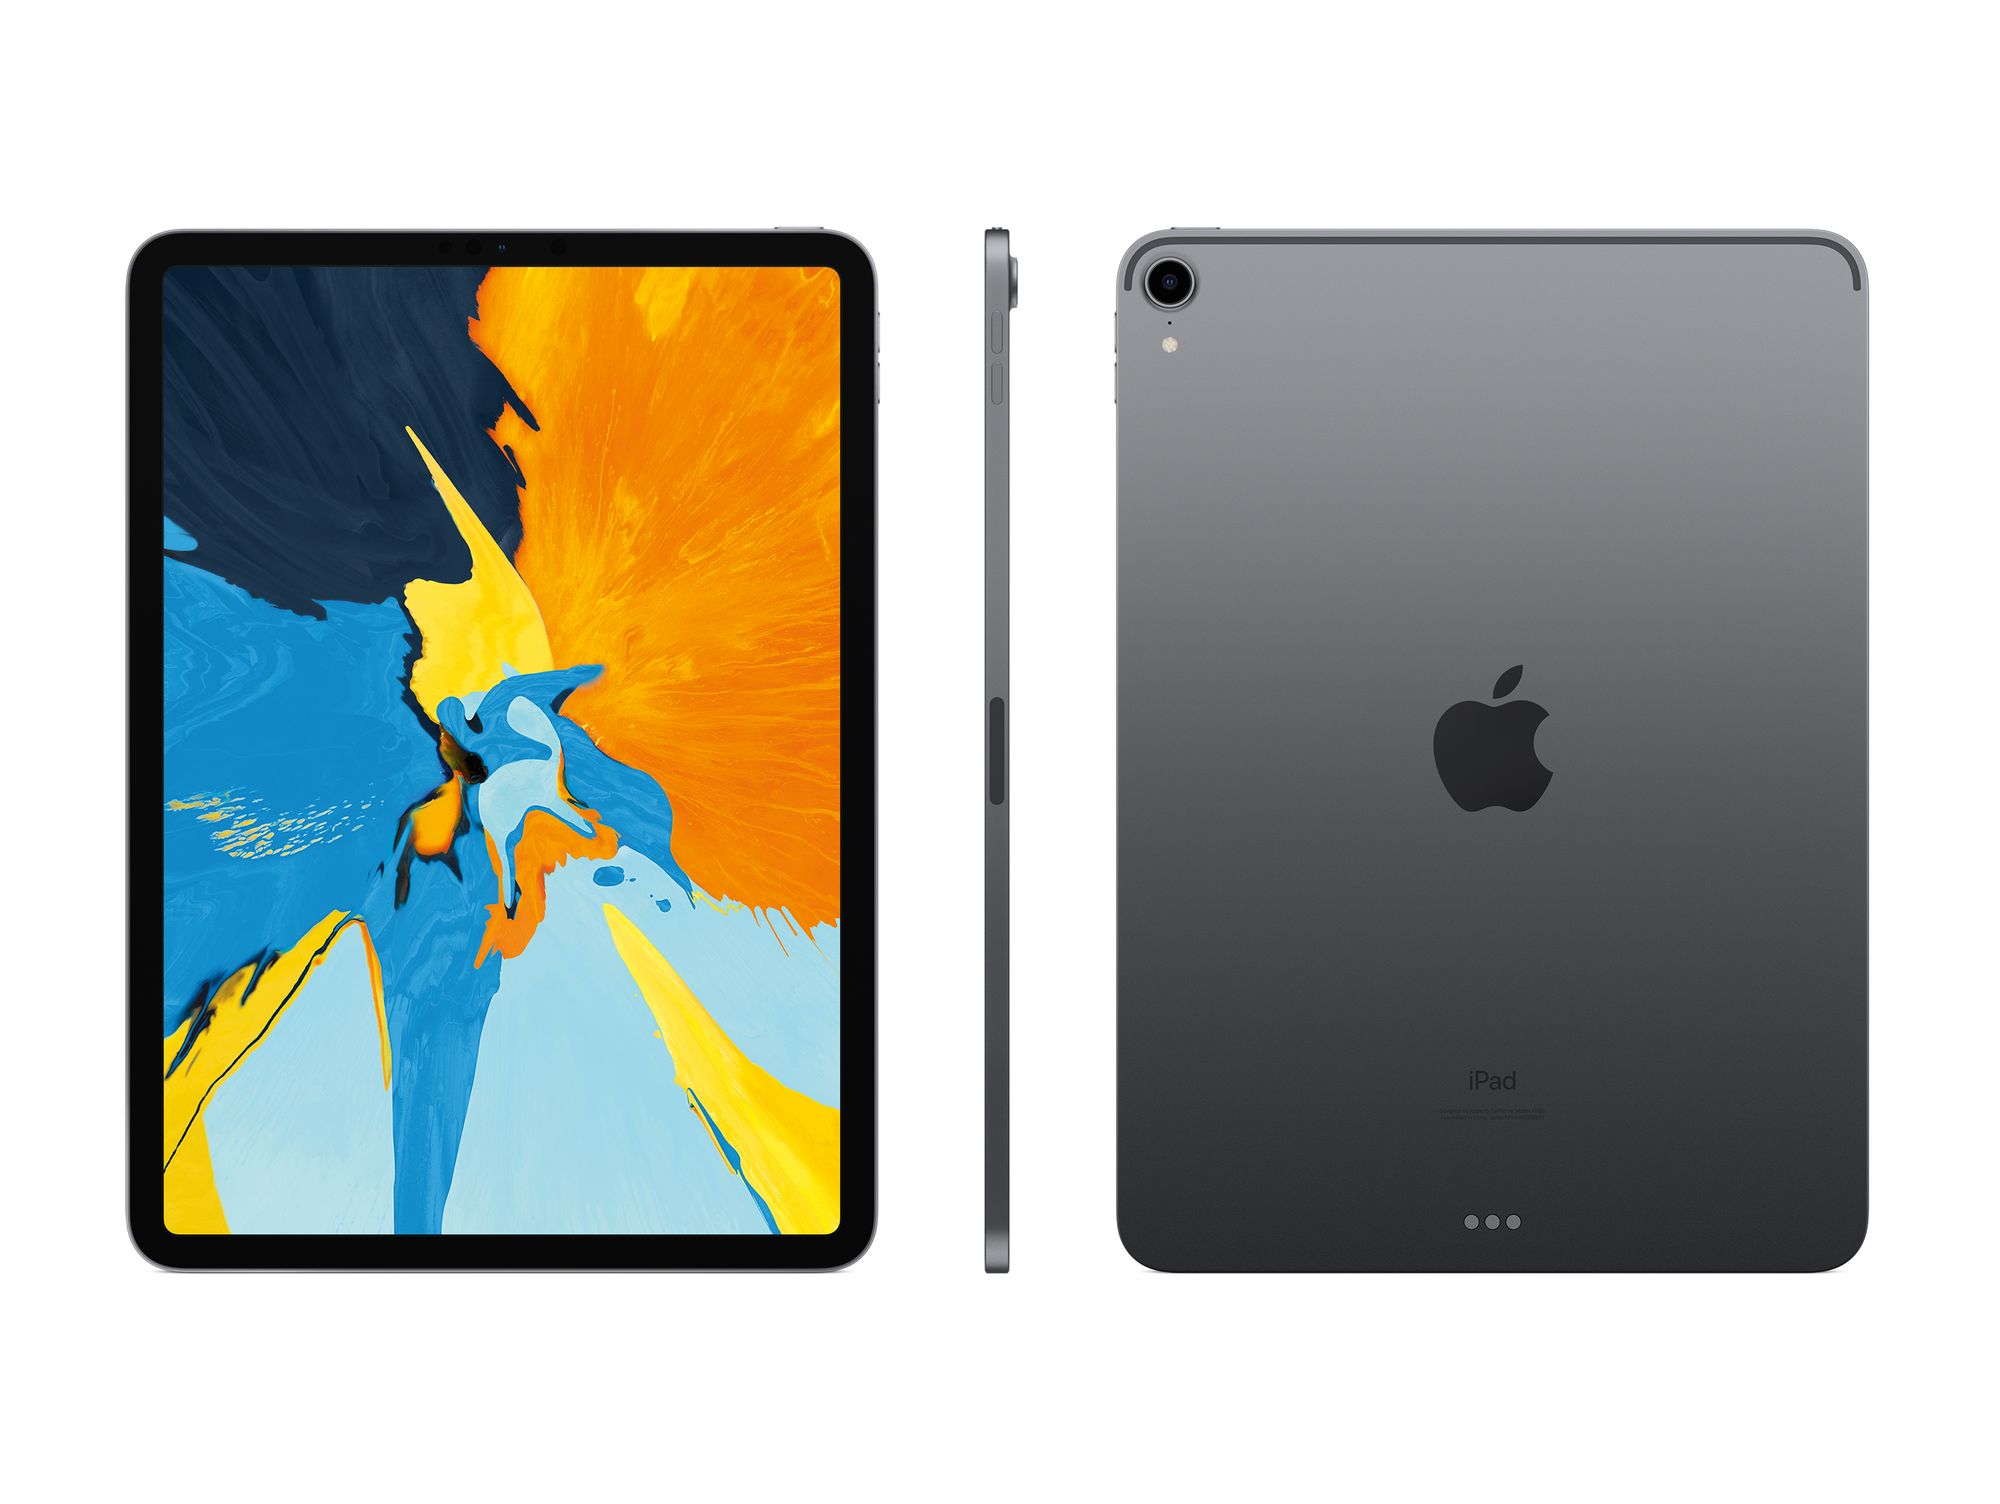 Apple iPad Pro 11 2018 Wi-Fi 512GB Space Gray (MTXT2)